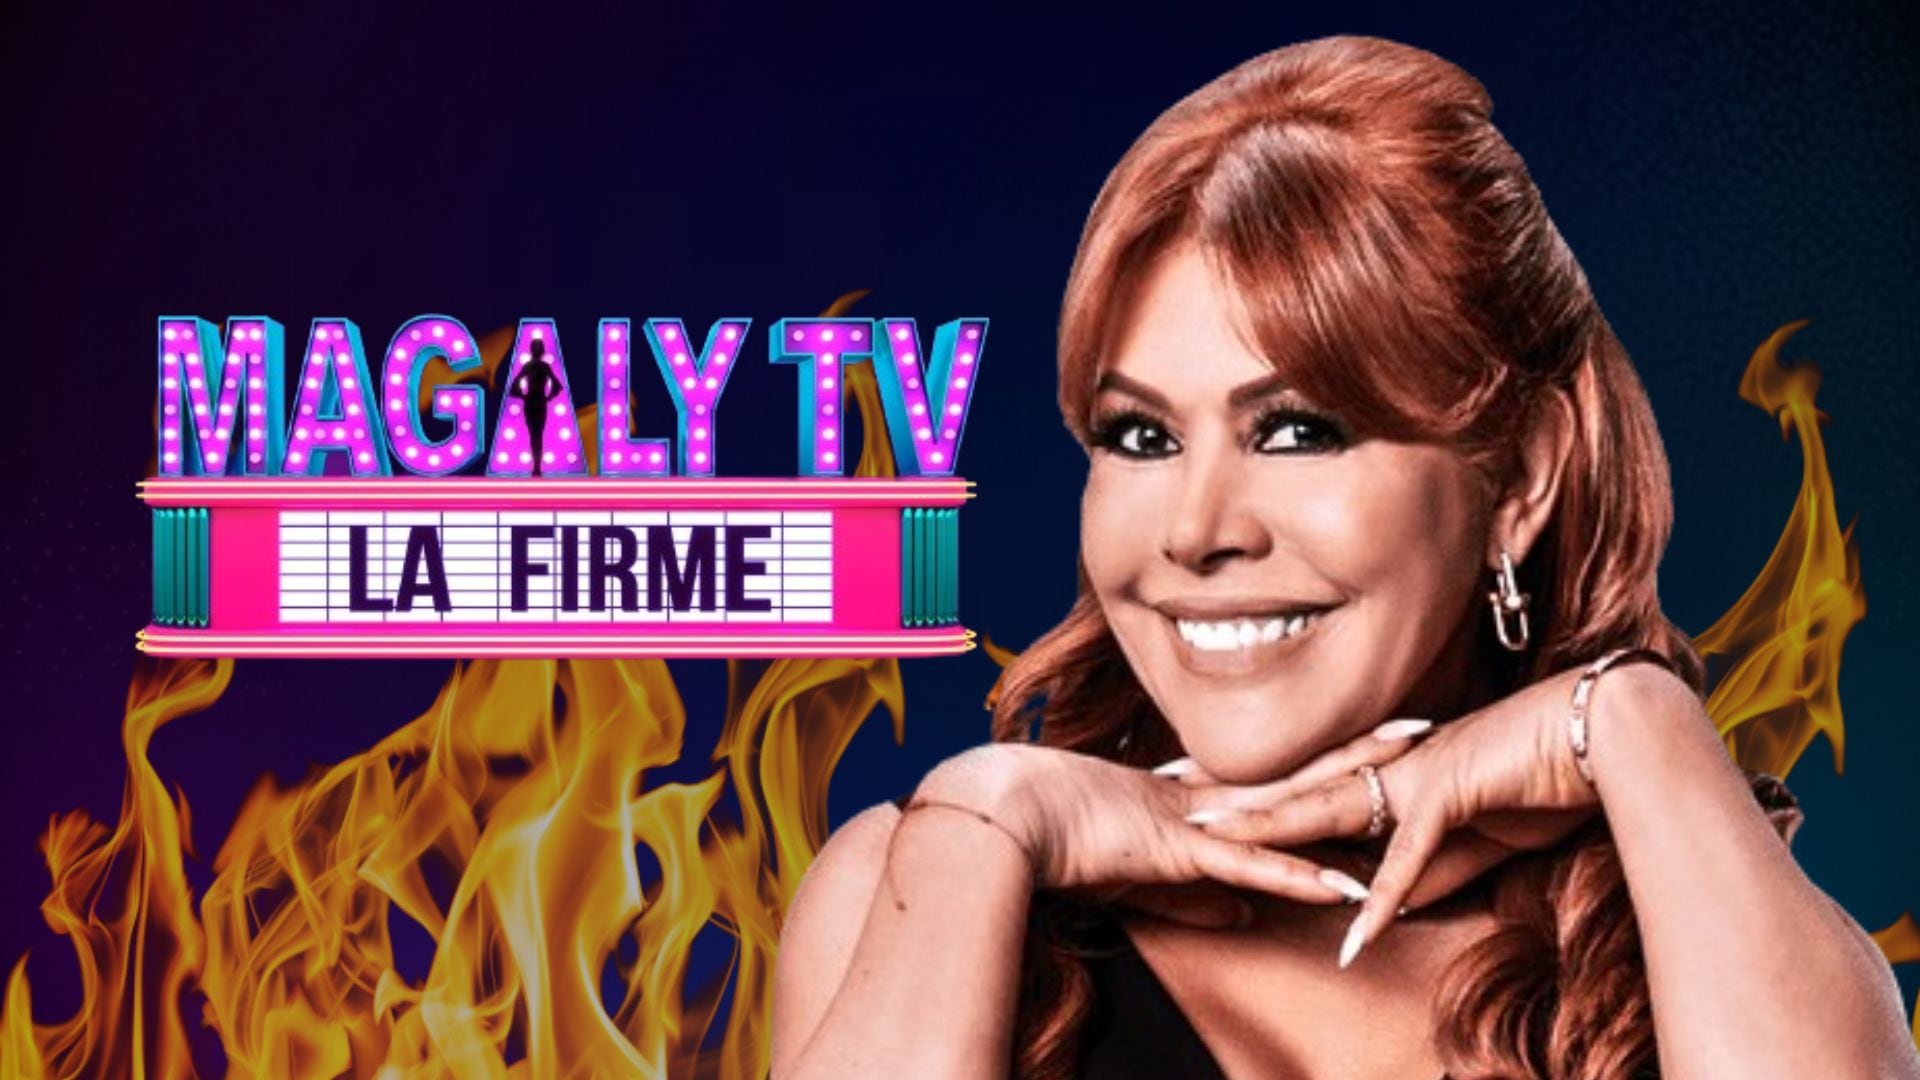 Sigue lo más destacado de la farándula peruana en 'Magaly TV La Firme'.